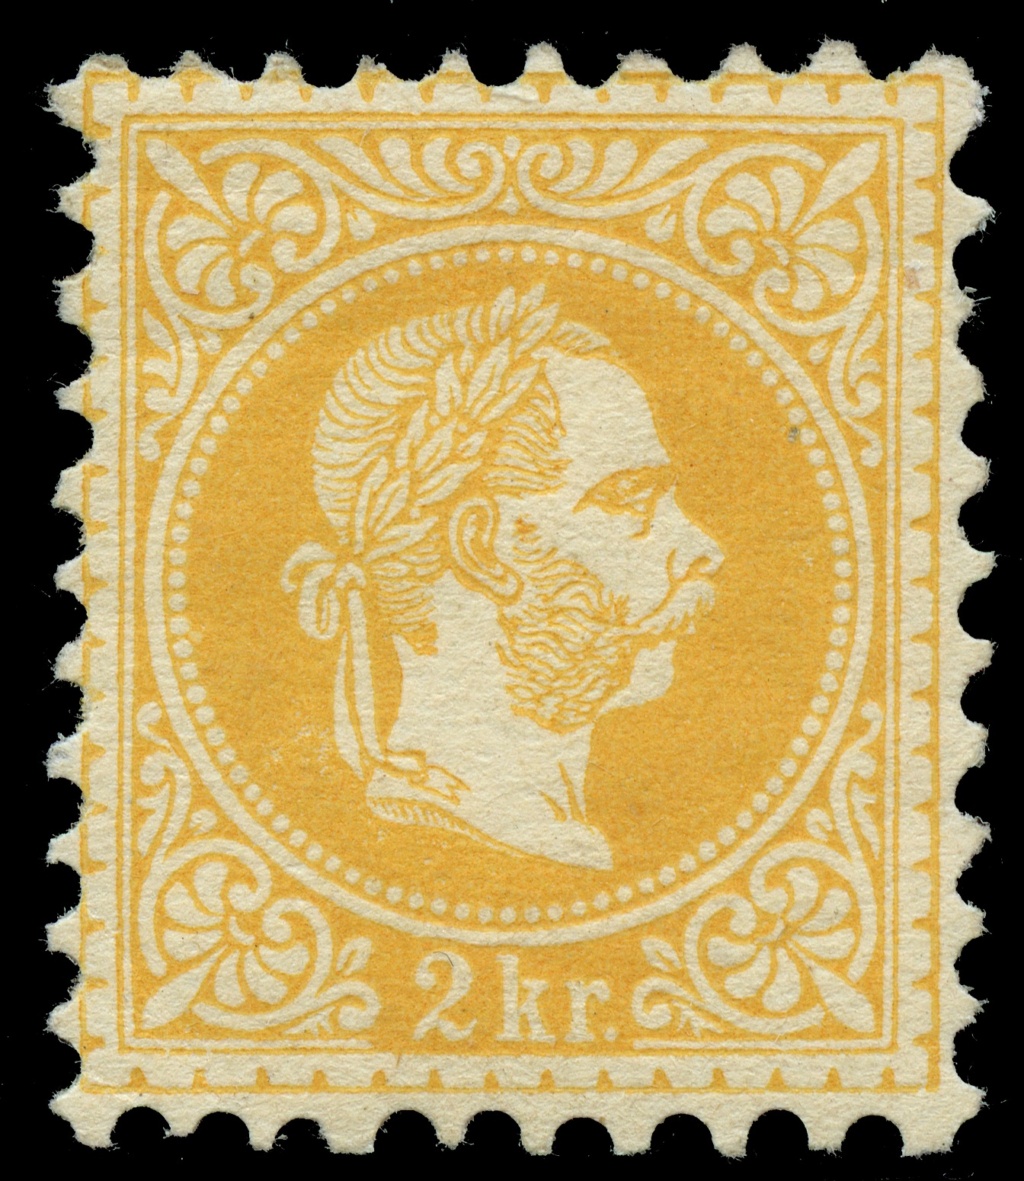 Osterreich - Freimarken-Ausgabe 1867 : Kopfbildnis Kaiser Franz Joseph I - Seite 23 Ank_3520